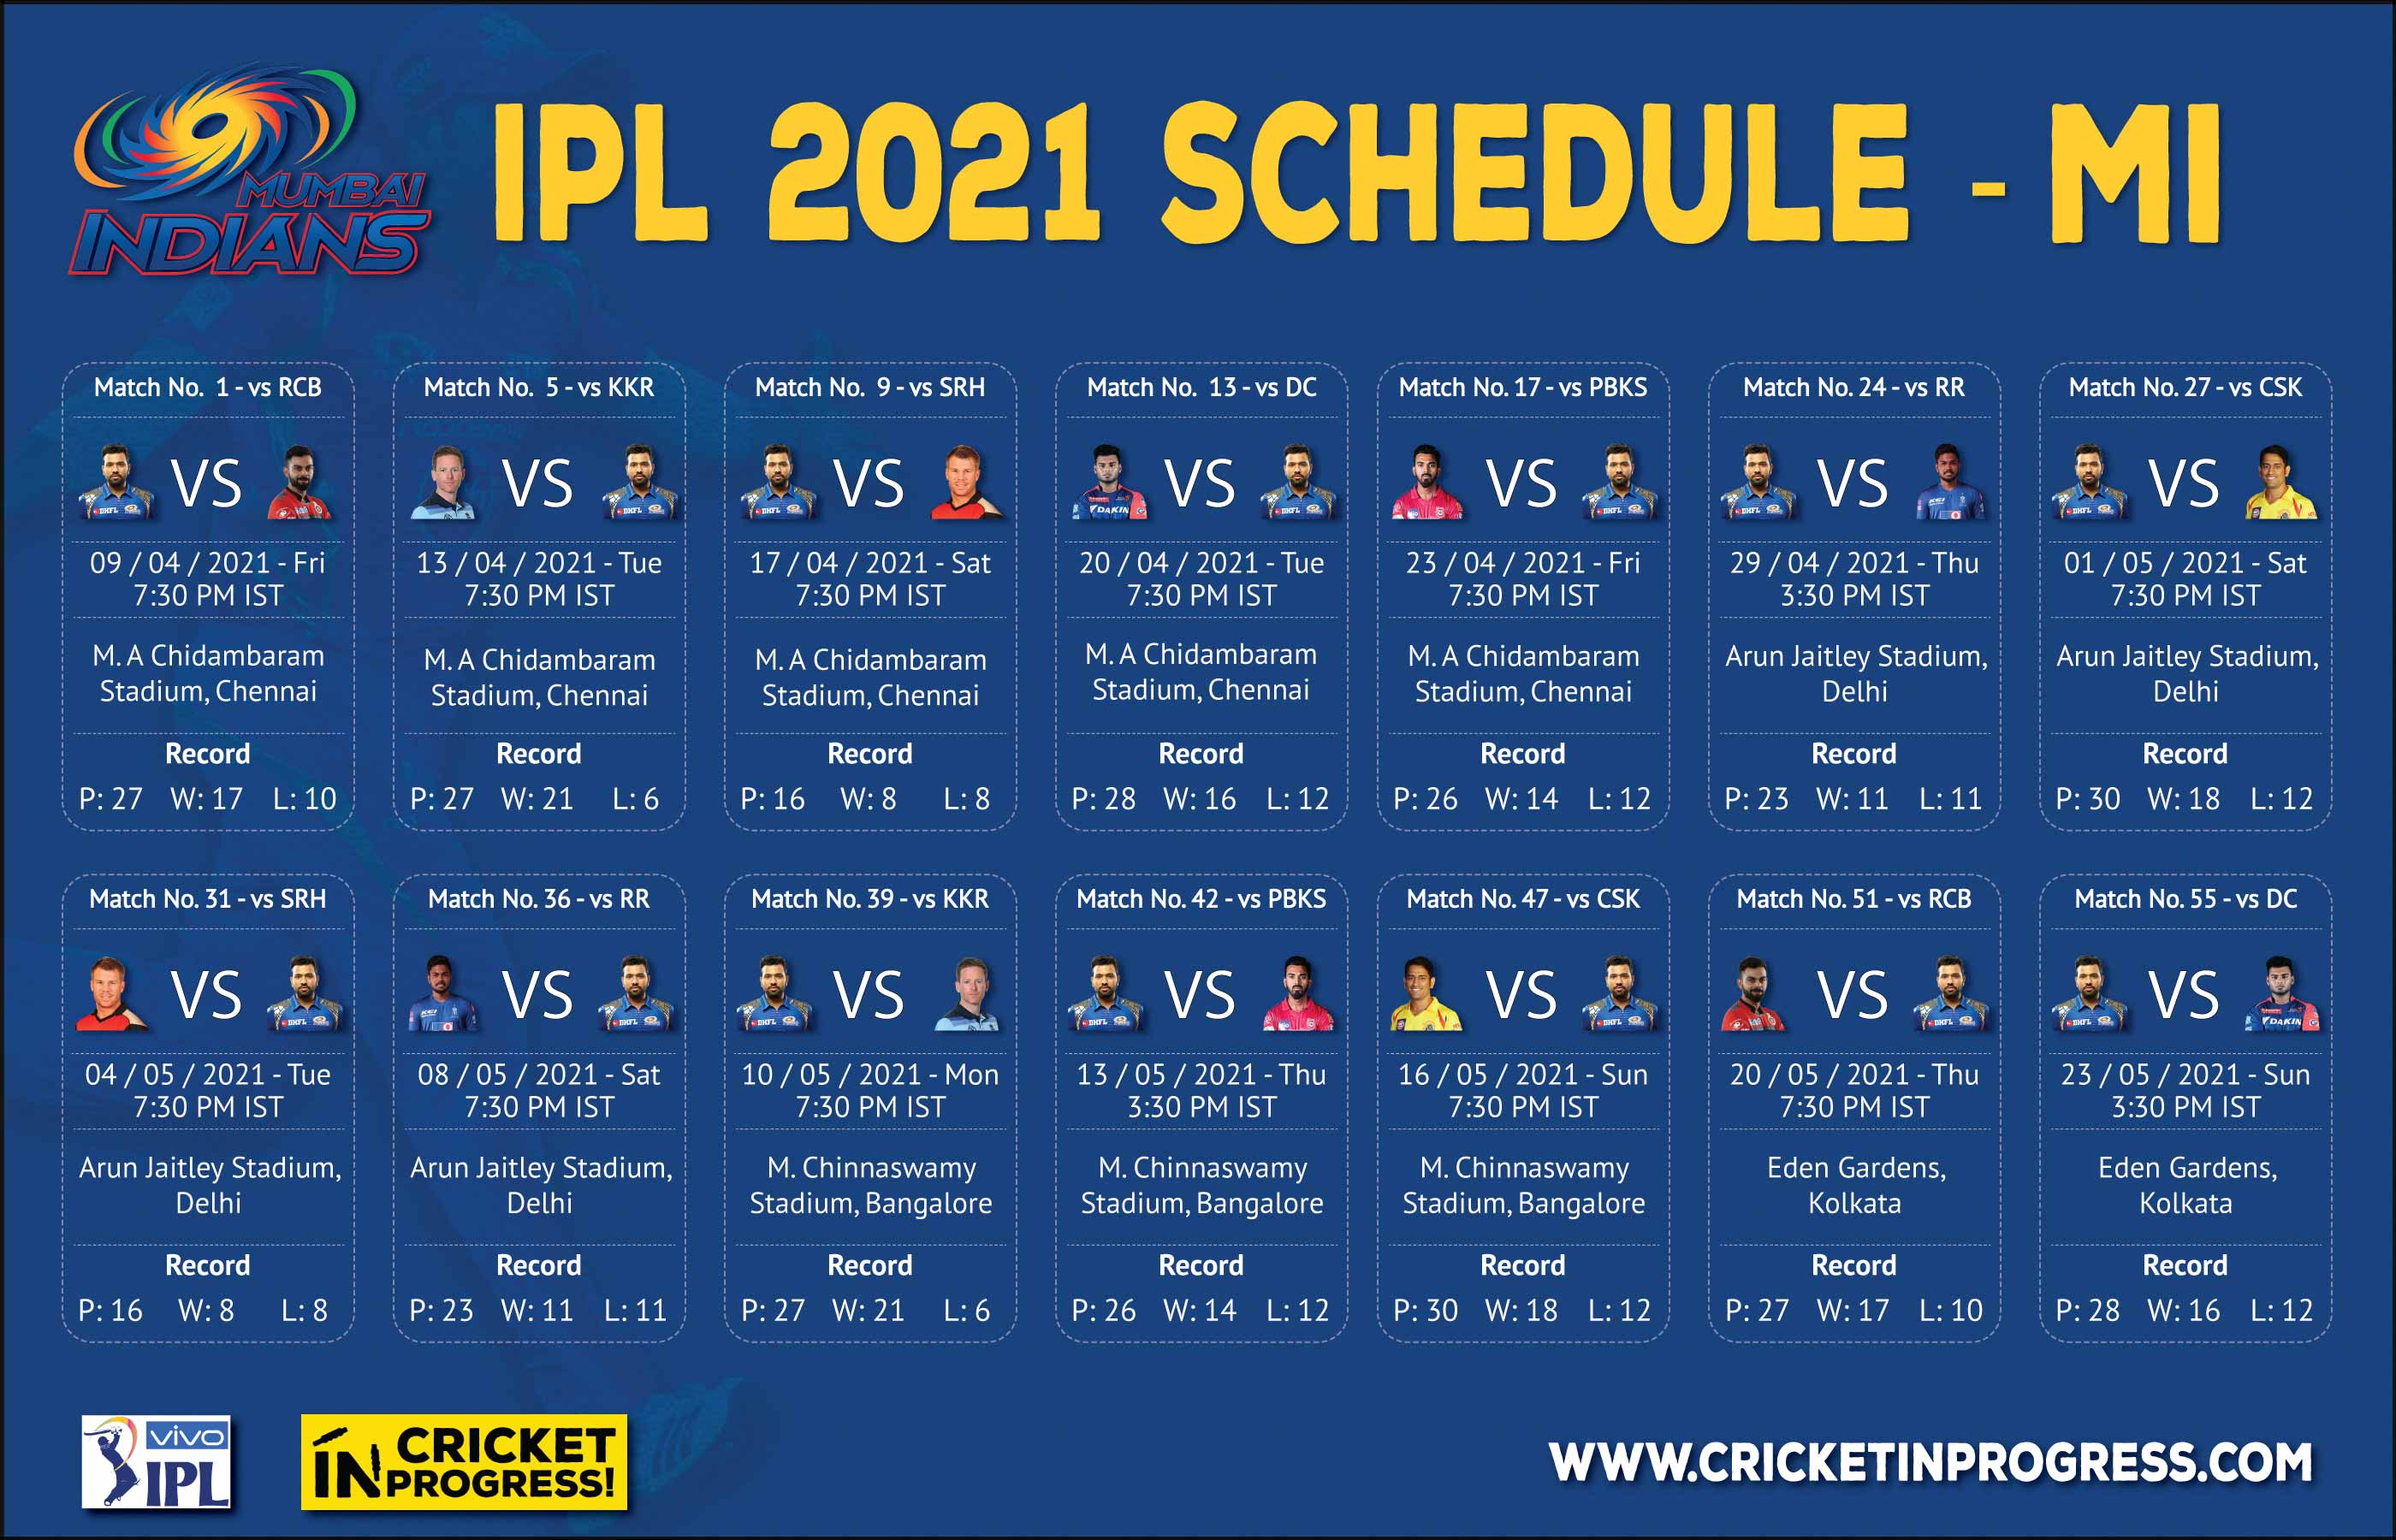 IPL 2021 MI Schedule